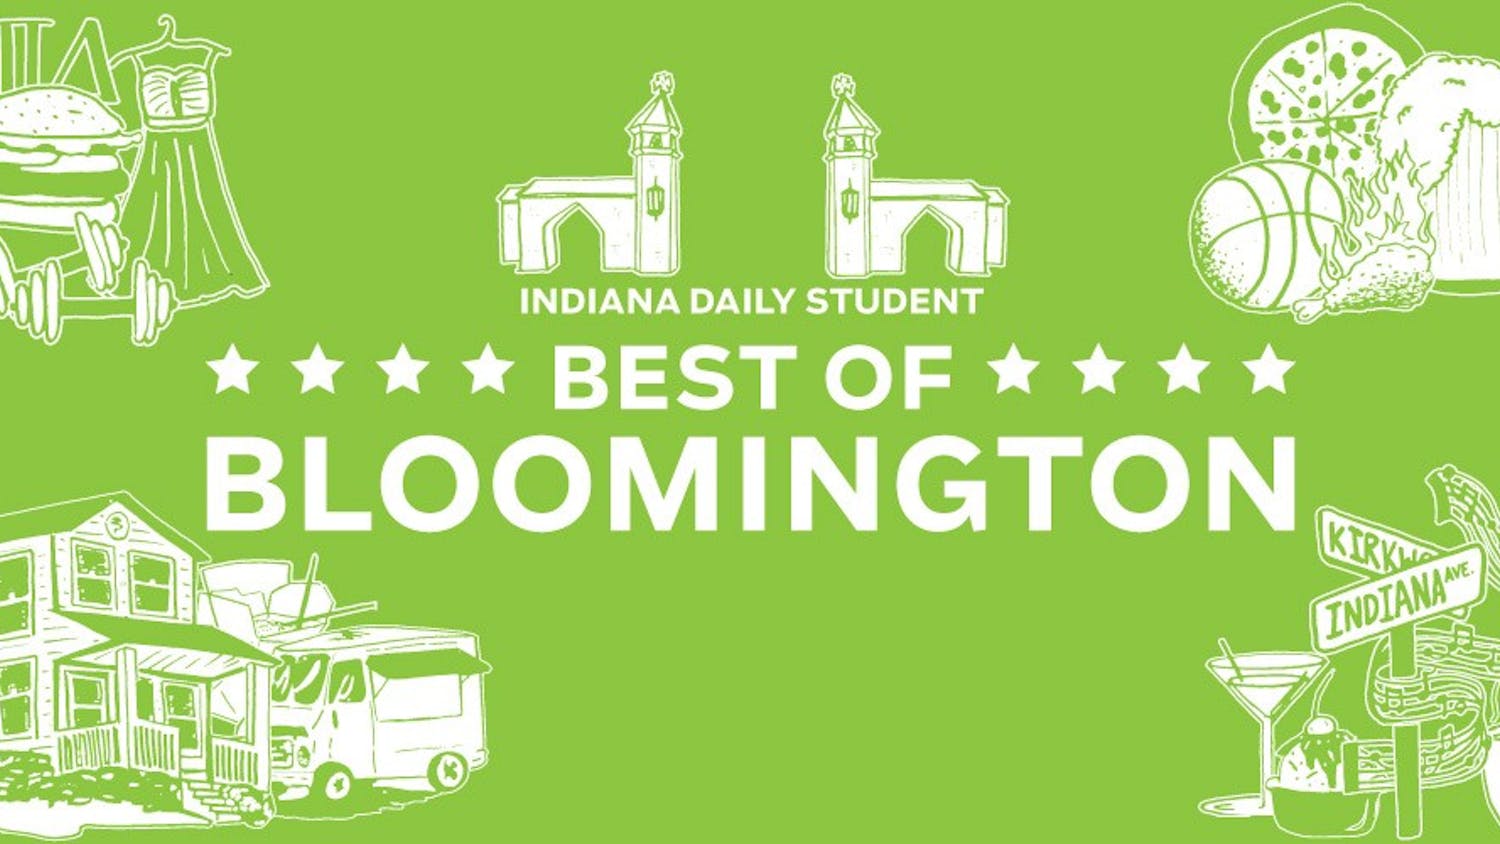 Best of Bloomington 2014 voting